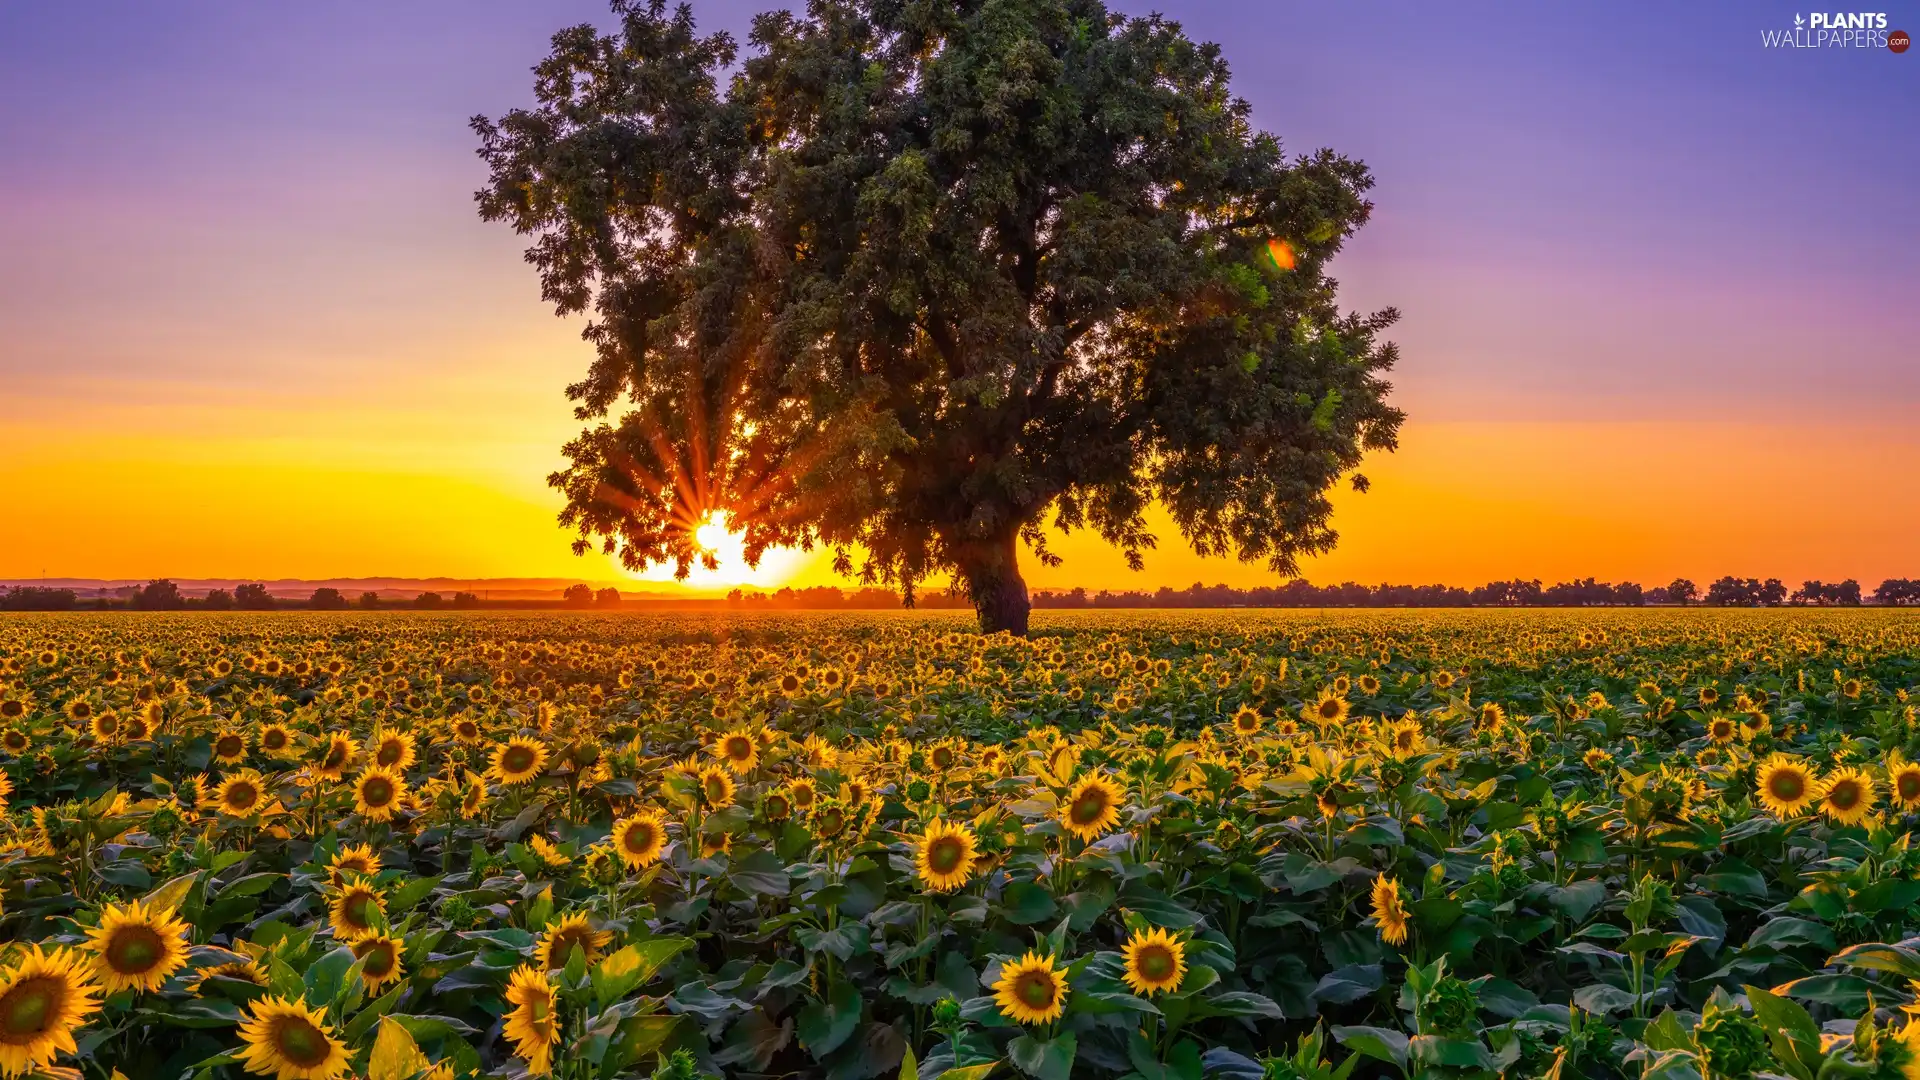 Field, Sunrise, trees, Nice sunflowers